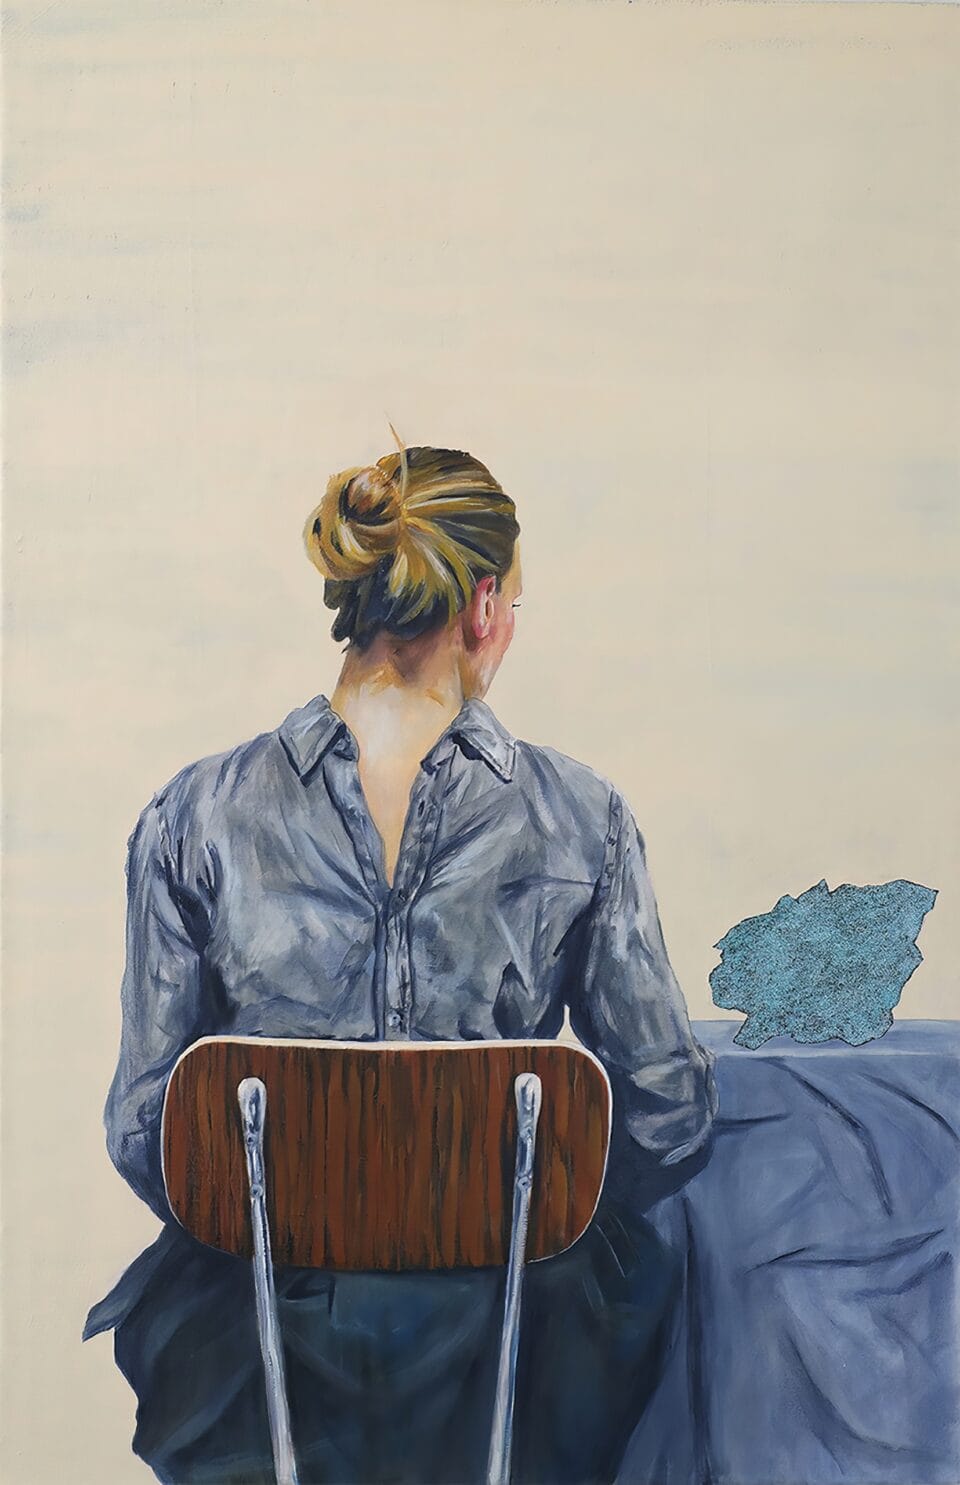 Marie de dos, d'après Hammershøi, 115x75 cm, huile et paillettes sur toile, 2019